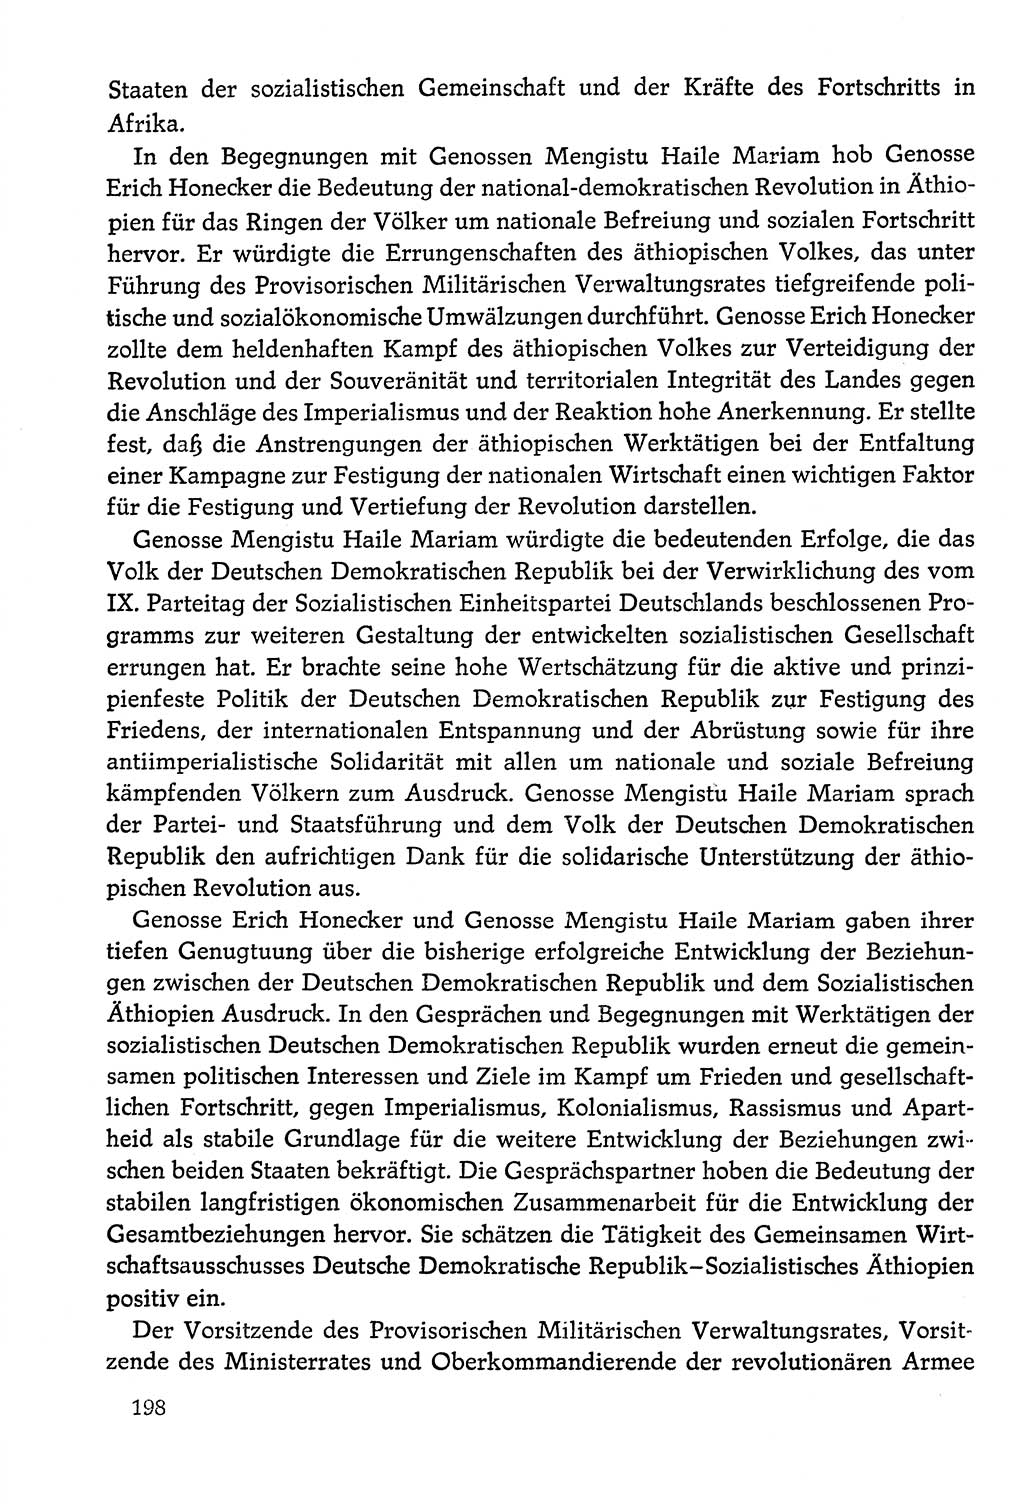 Dokumente der Sozialistischen Einheitspartei Deutschlands (SED) [Deutsche Demokratische Republik (DDR)] 1978-1979, Seite 198 (Dok. SED DDR 1978-1979, S. 198)